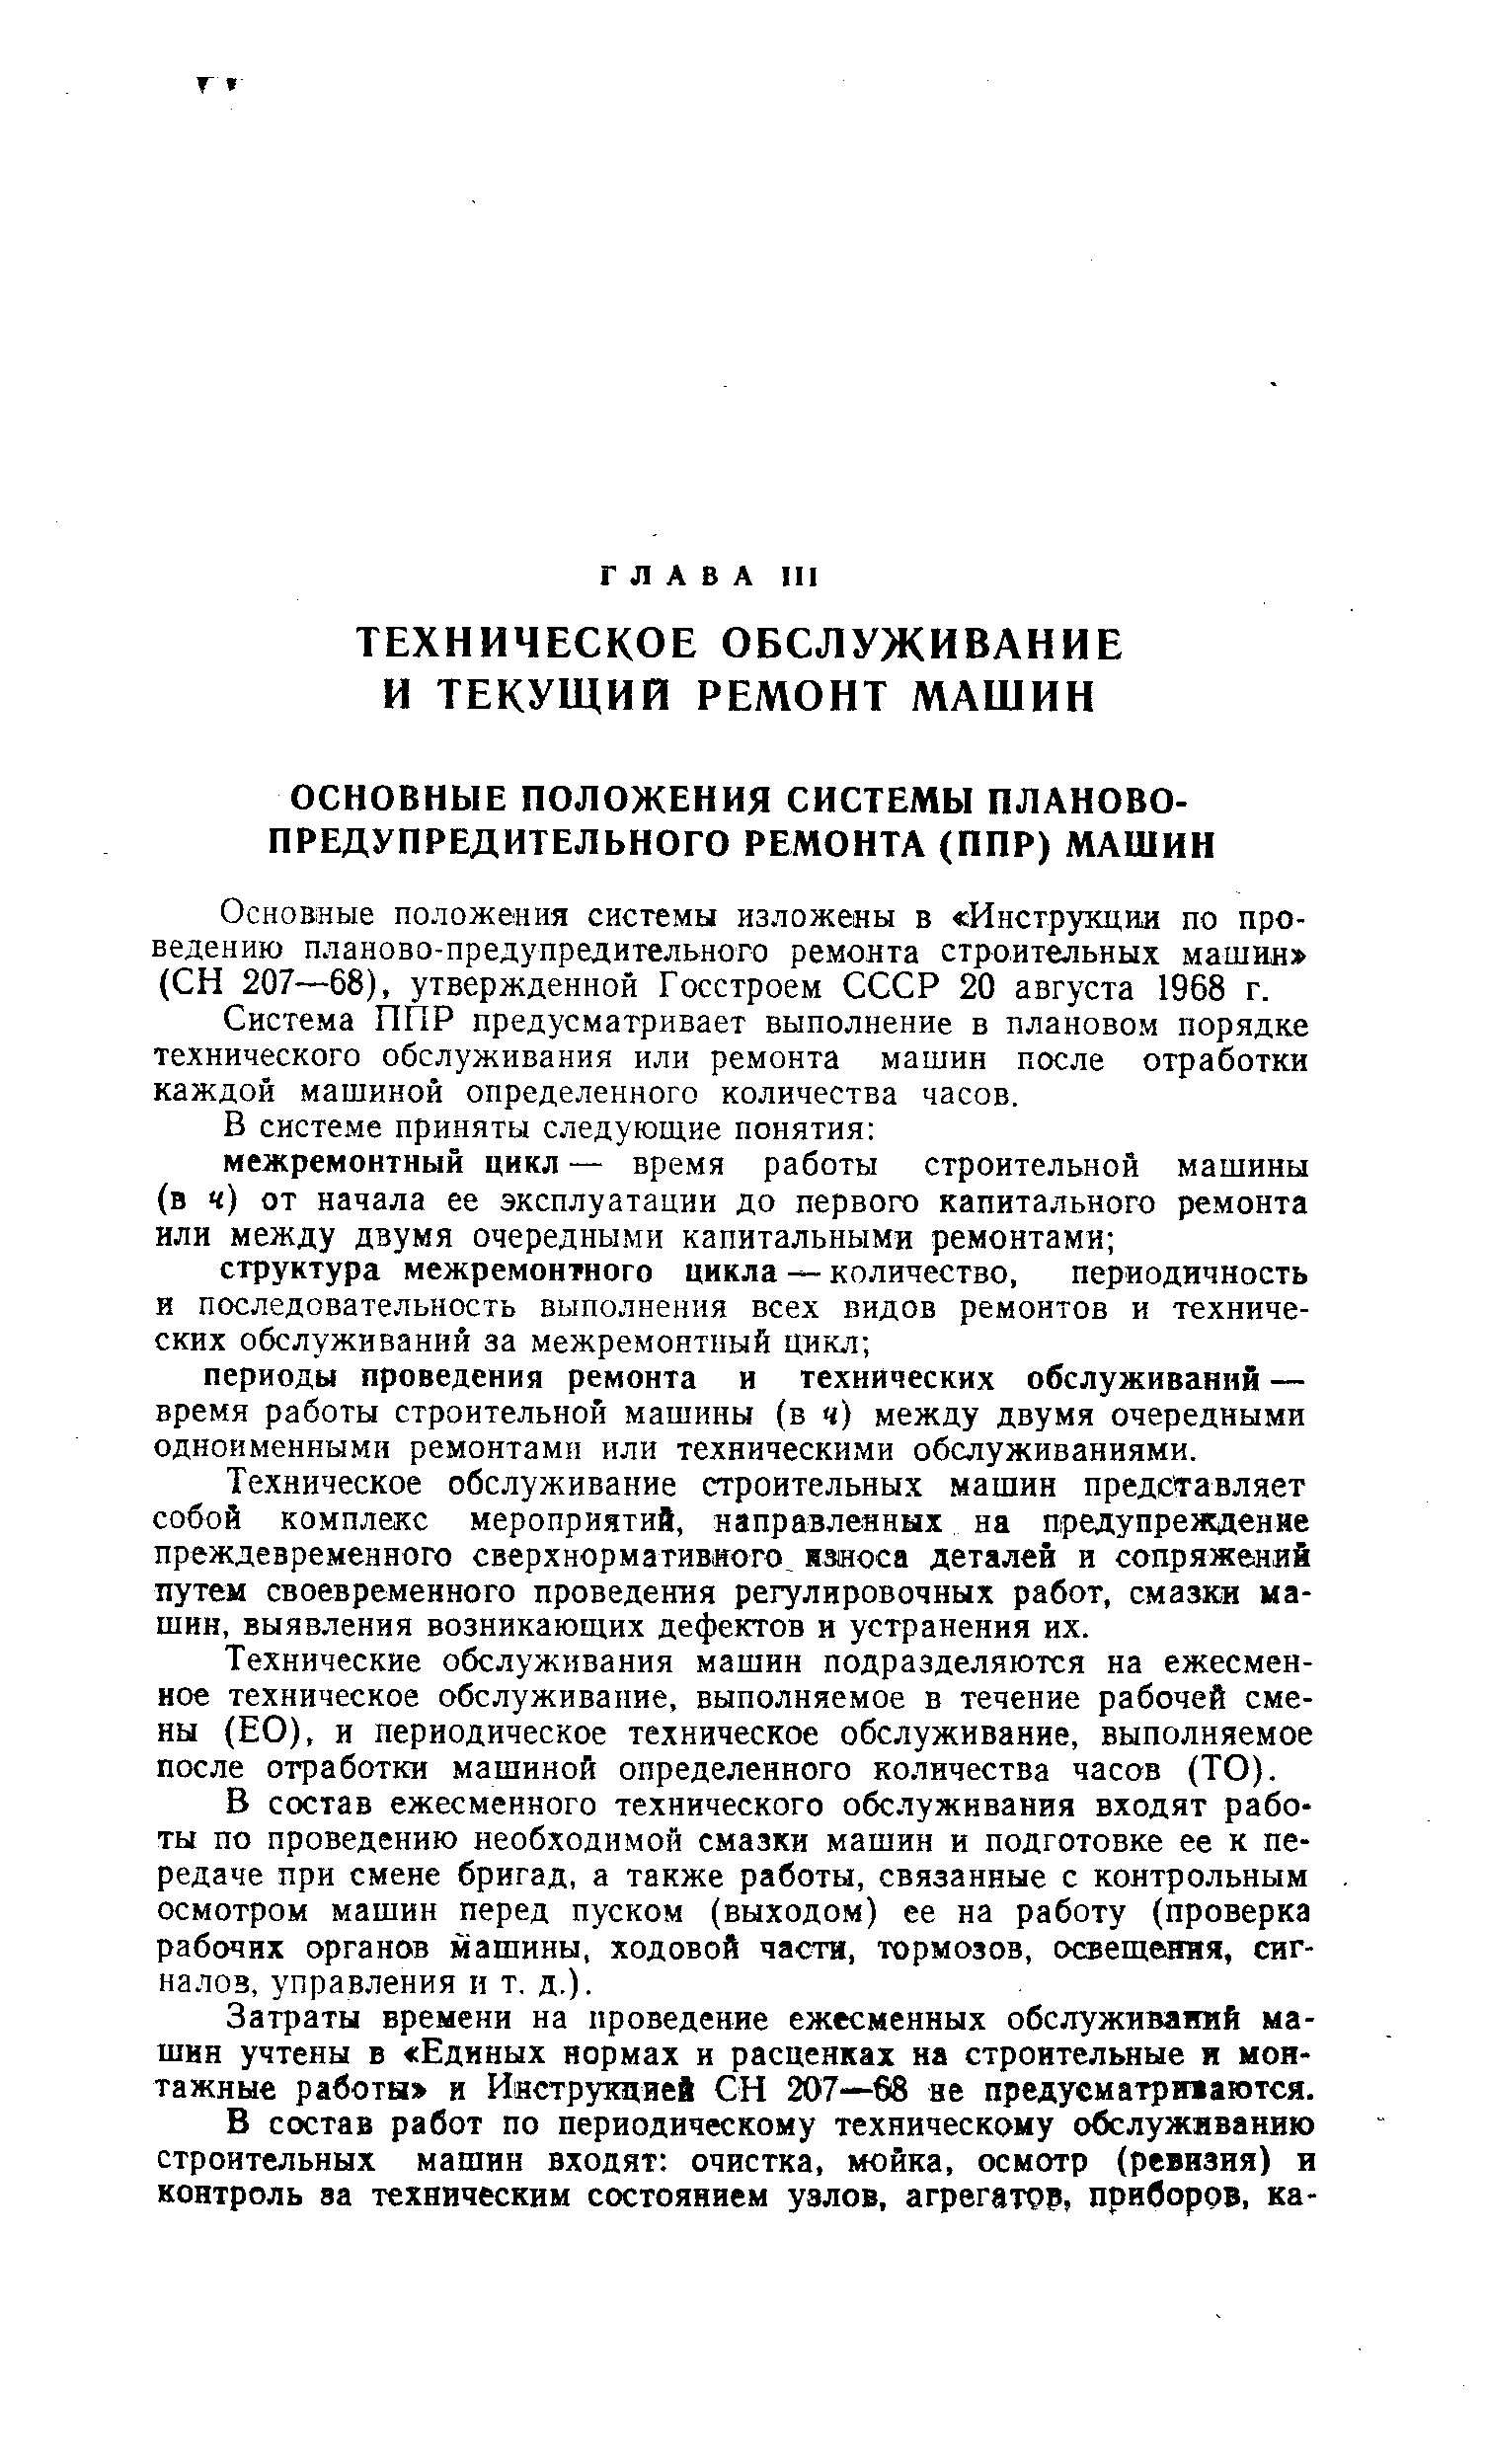 Основные положения системы изложены в Инструкции по проведению планово-предупредительного ремонта строительных машин (СН 207—68), утвержденной Госстроем СССР 20 августа 1968 г.
